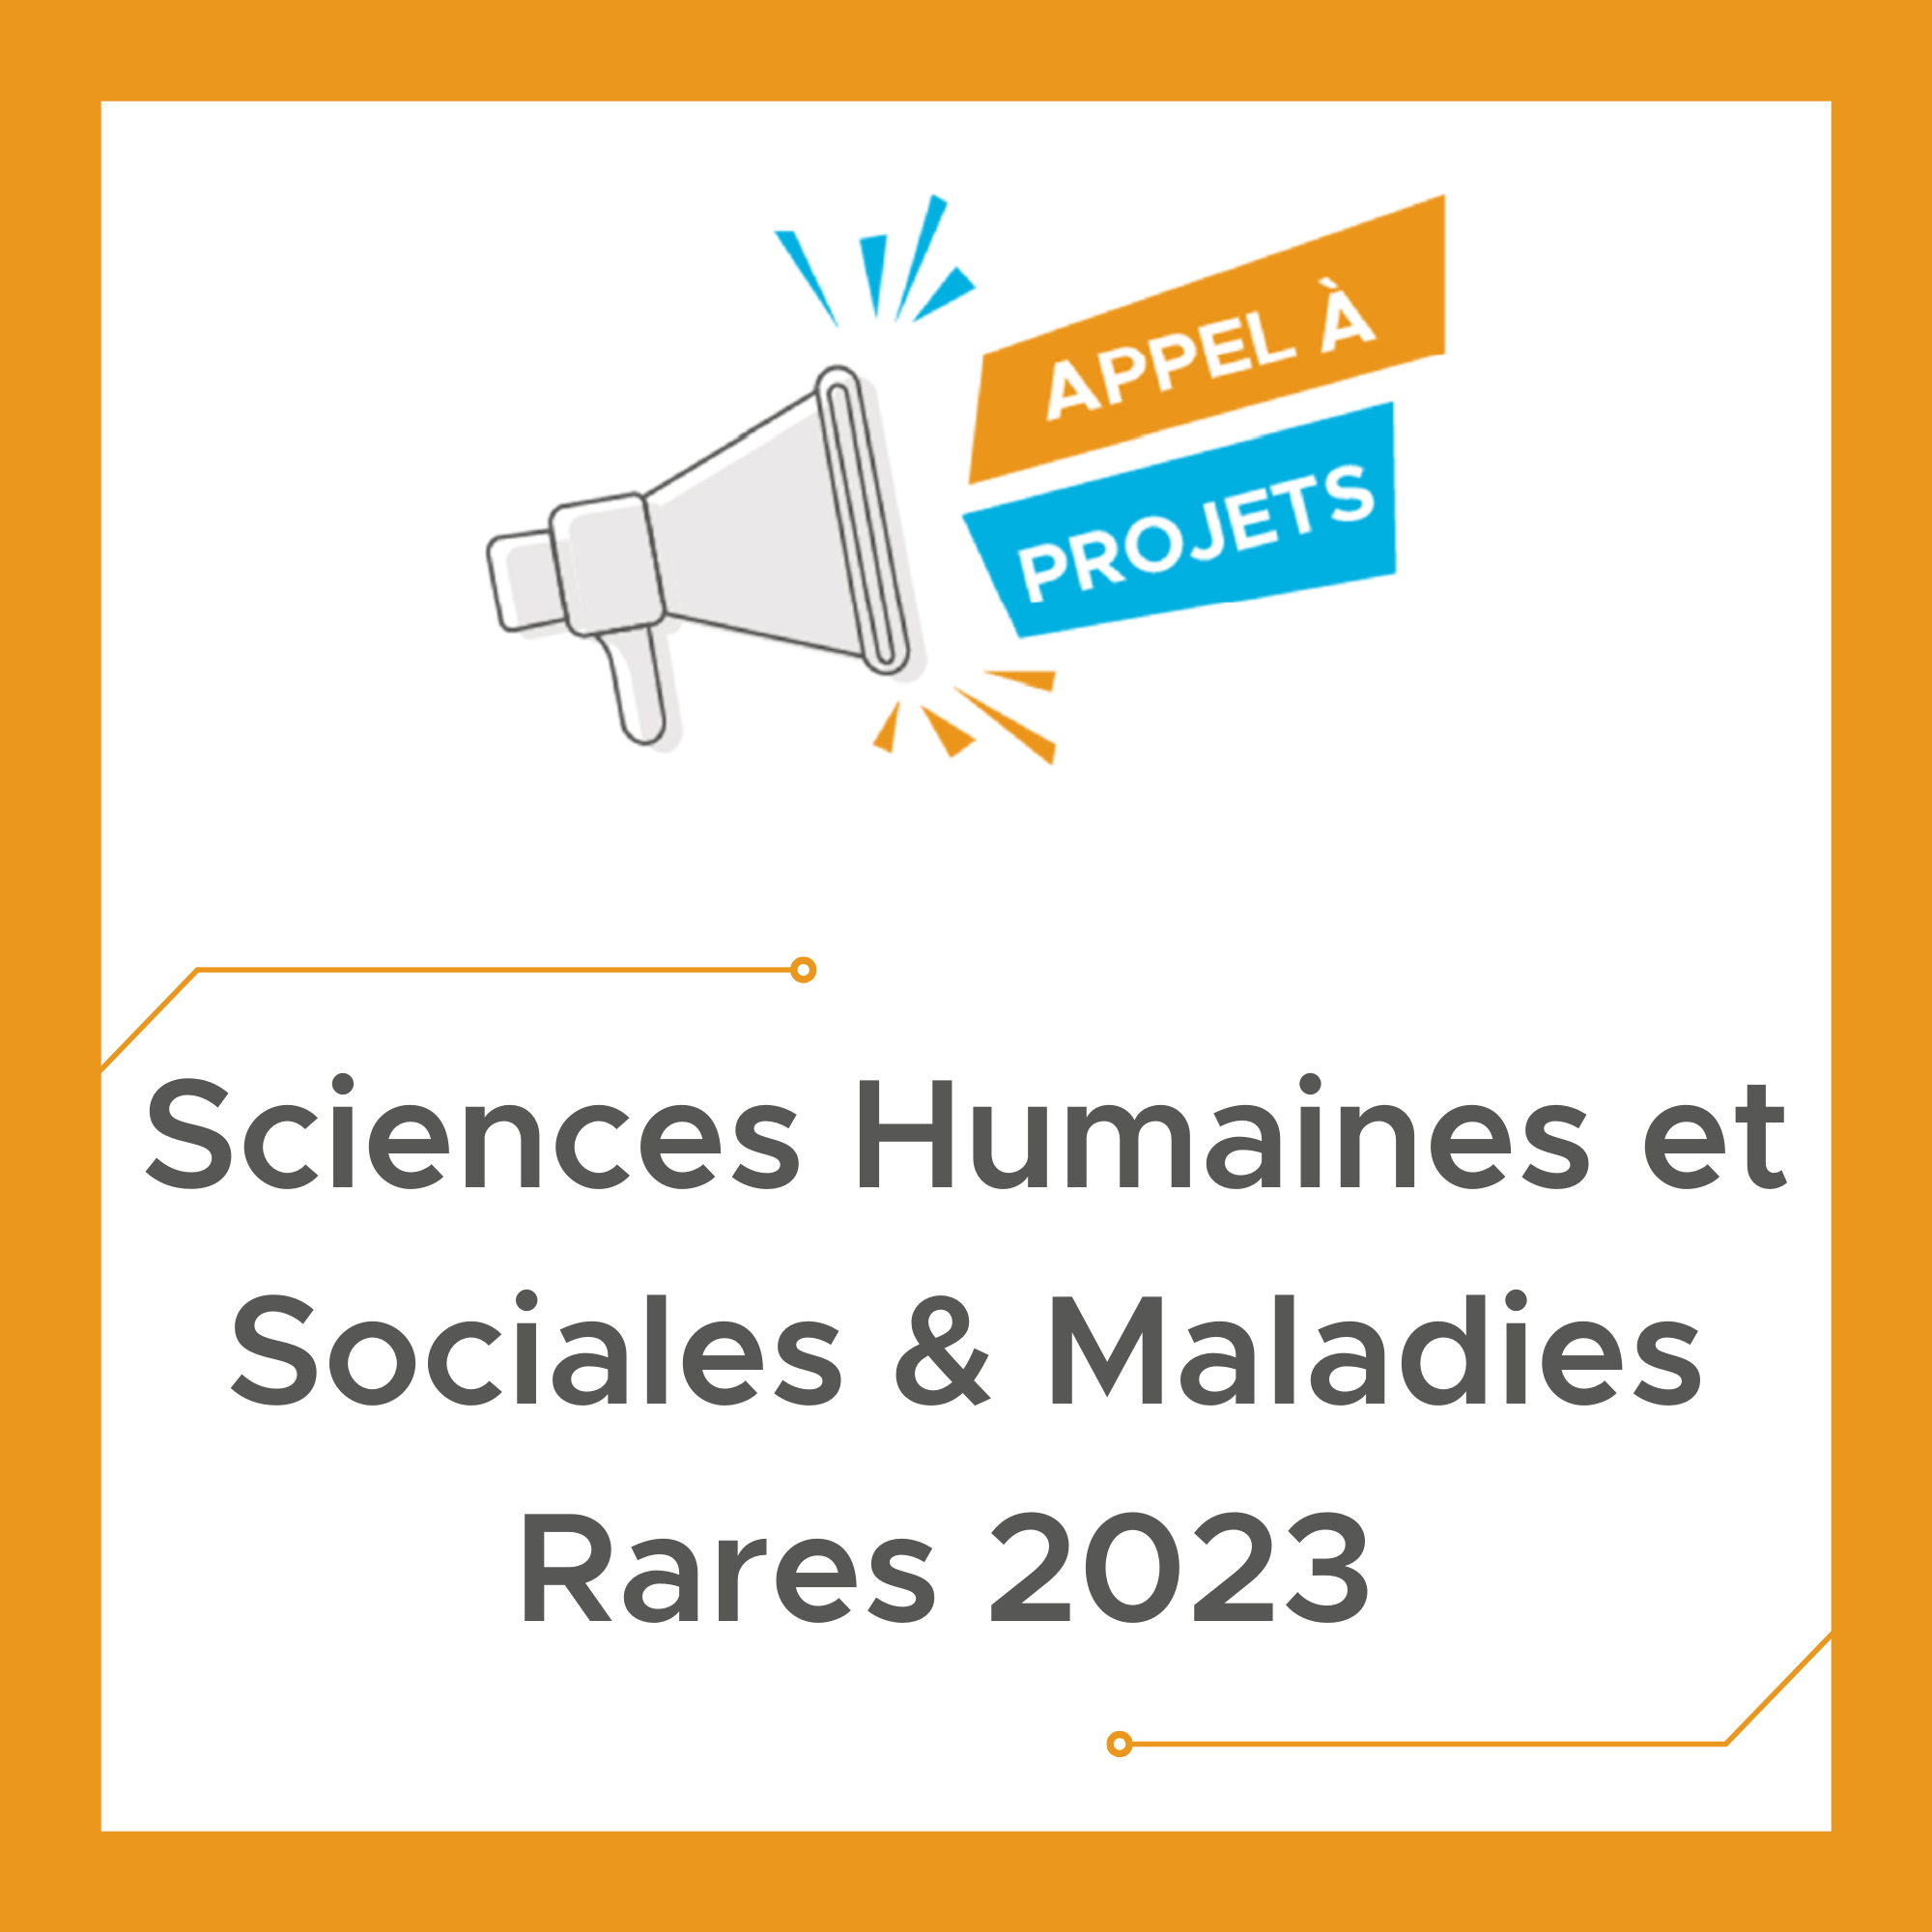 Appel à Projets « Sciences Humaines et Sociales & Maladies Rares » 2023